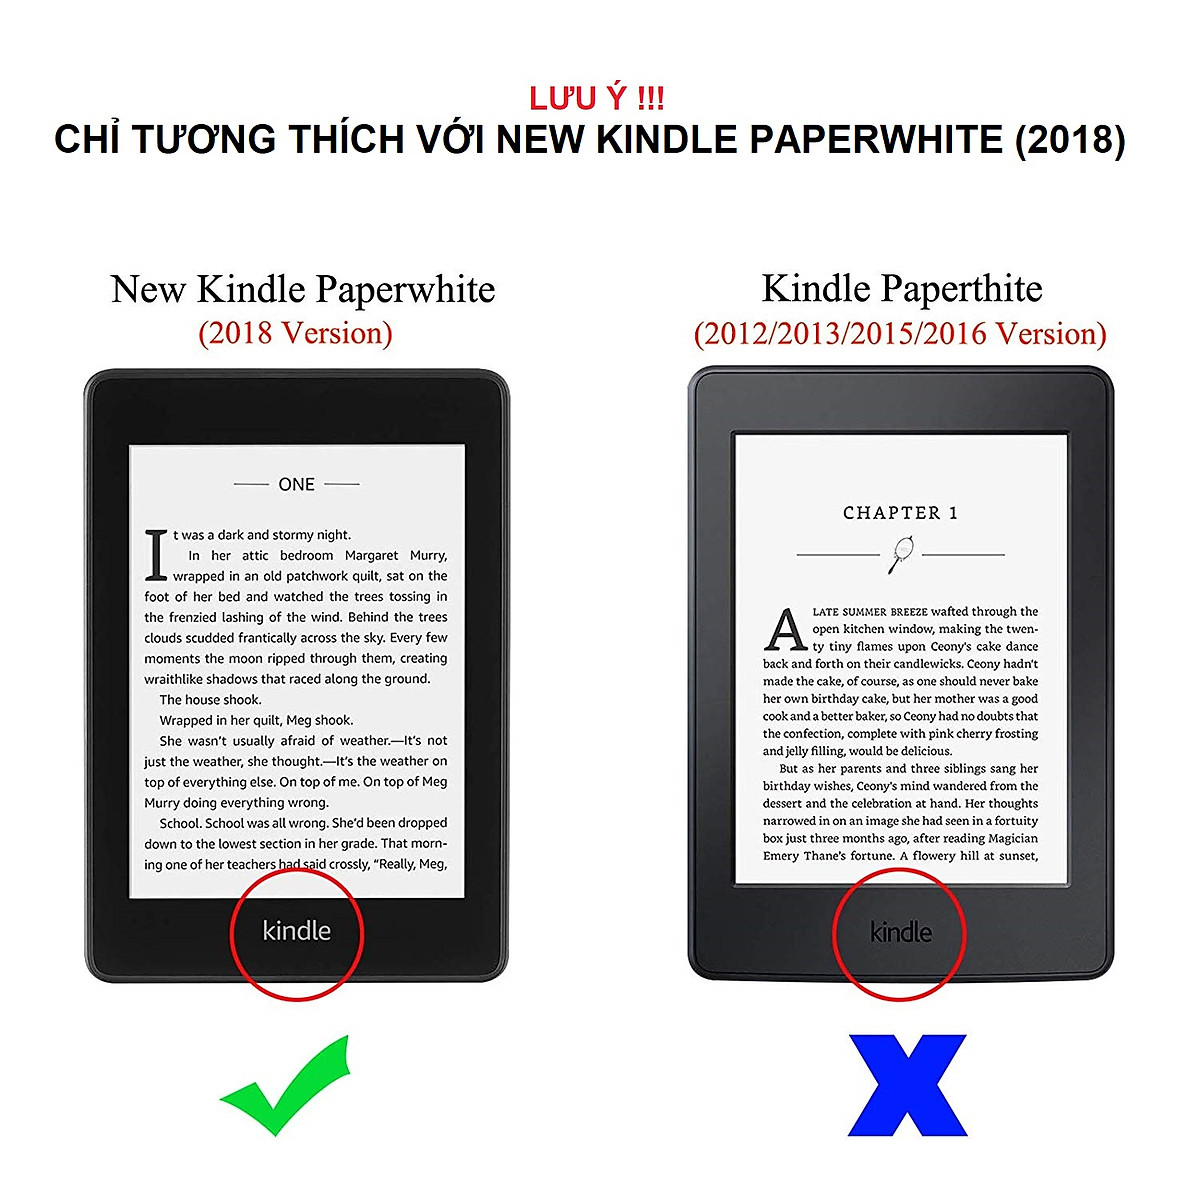 Sales Bao Da Case Cover Cho Máy Đọc Sách Kindle Paperwhite Gen 4 10th 2018 Hàng Chính Hãng Meliya accessories